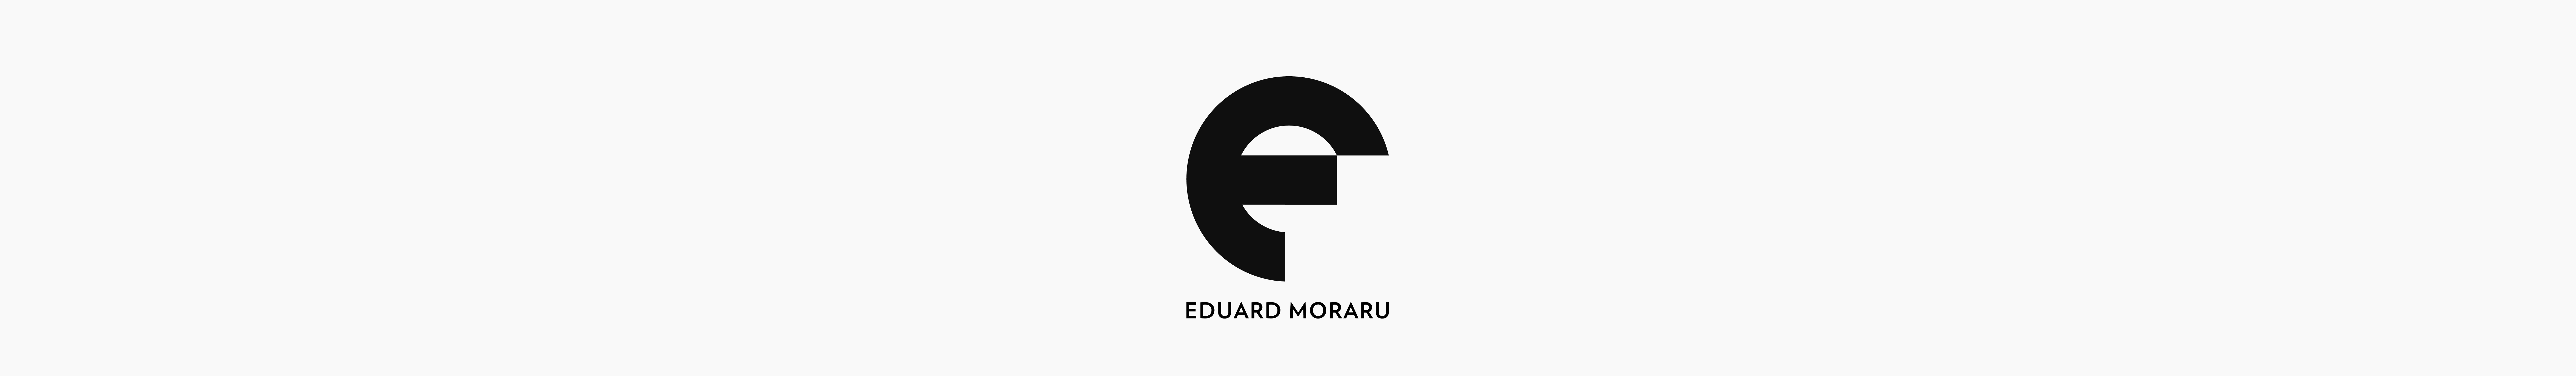 Eduard Moraru's profile banner